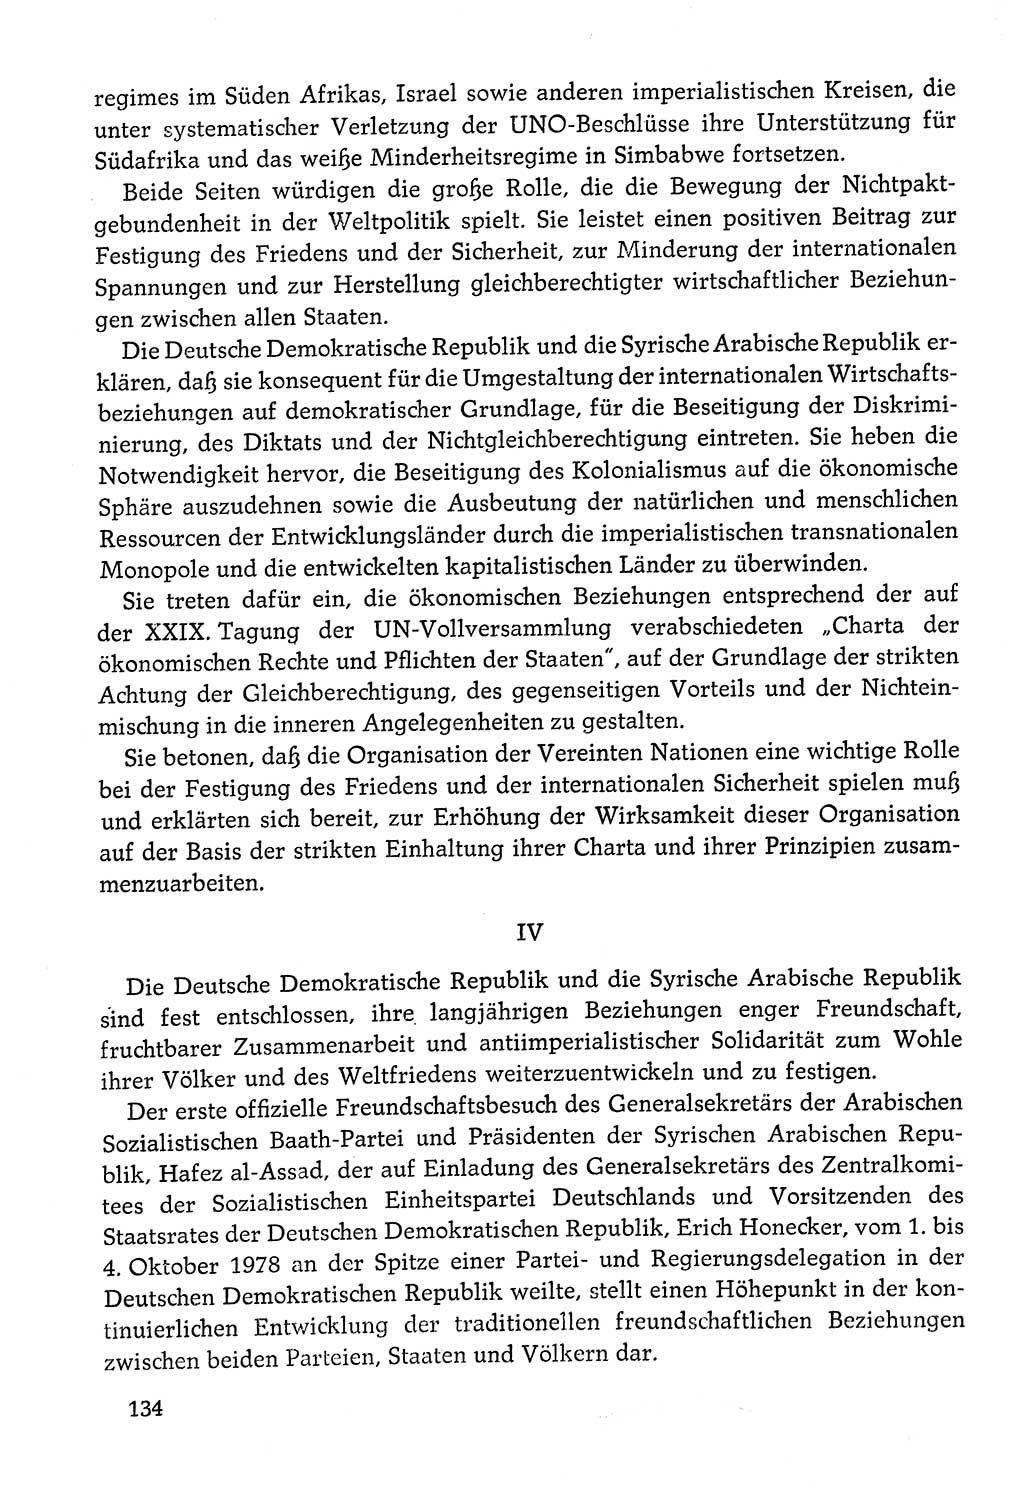 Dokumente der Sozialistischen Einheitspartei Deutschlands (SED) [Deutsche Demokratische Republik (DDR)] 1978-1979, Seite 134 (Dok. SED DDR 1978-1979, S. 134)